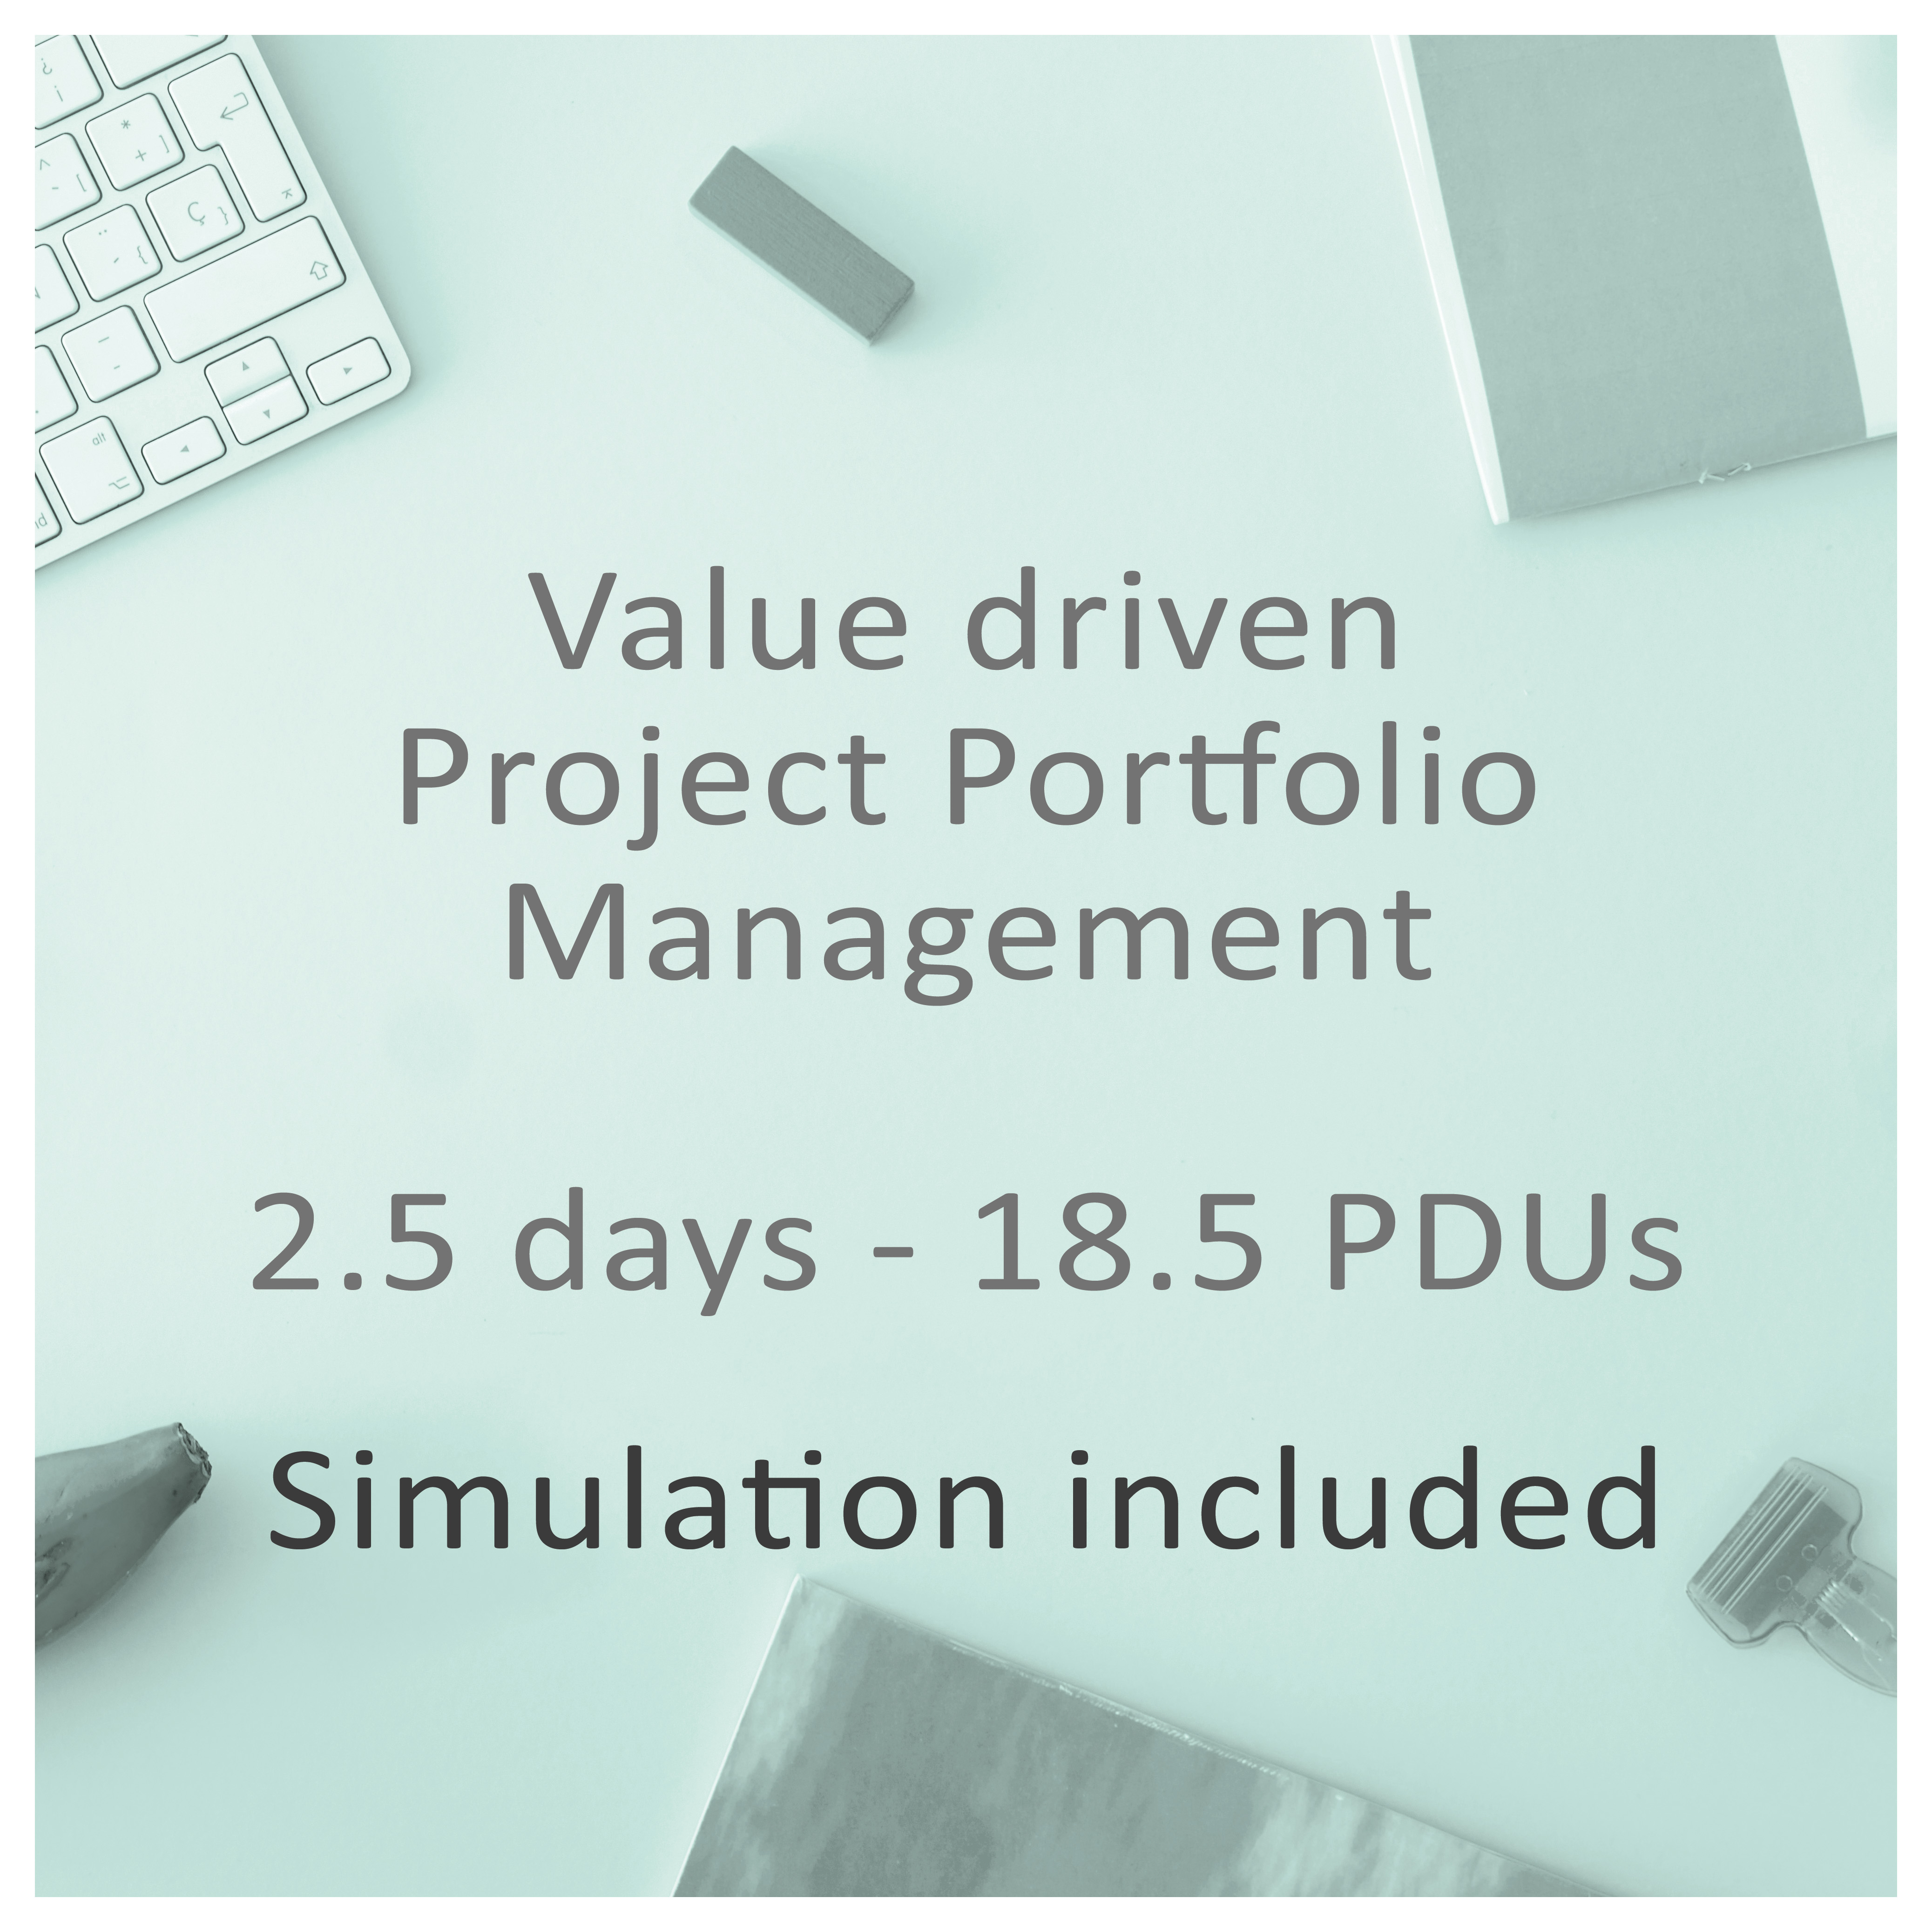  Value driven Project Portfolio Management